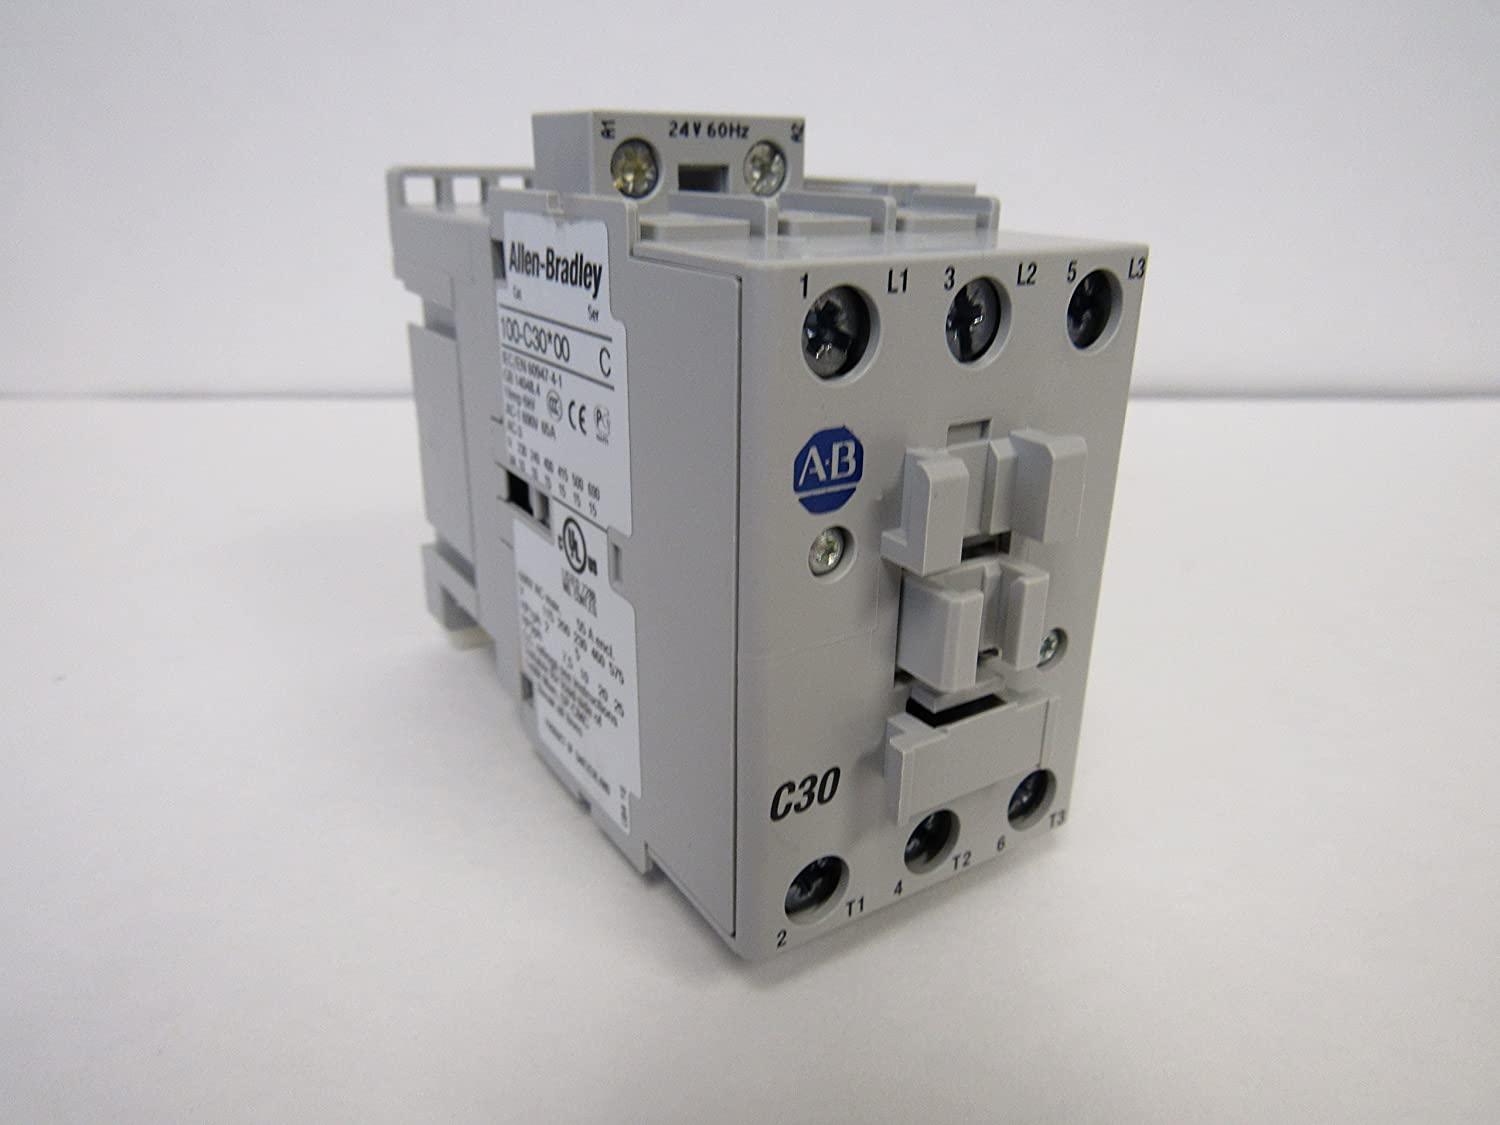  ALLEN BRADLEY 100-C30J10 30 AMP IEC CONTACTOR 